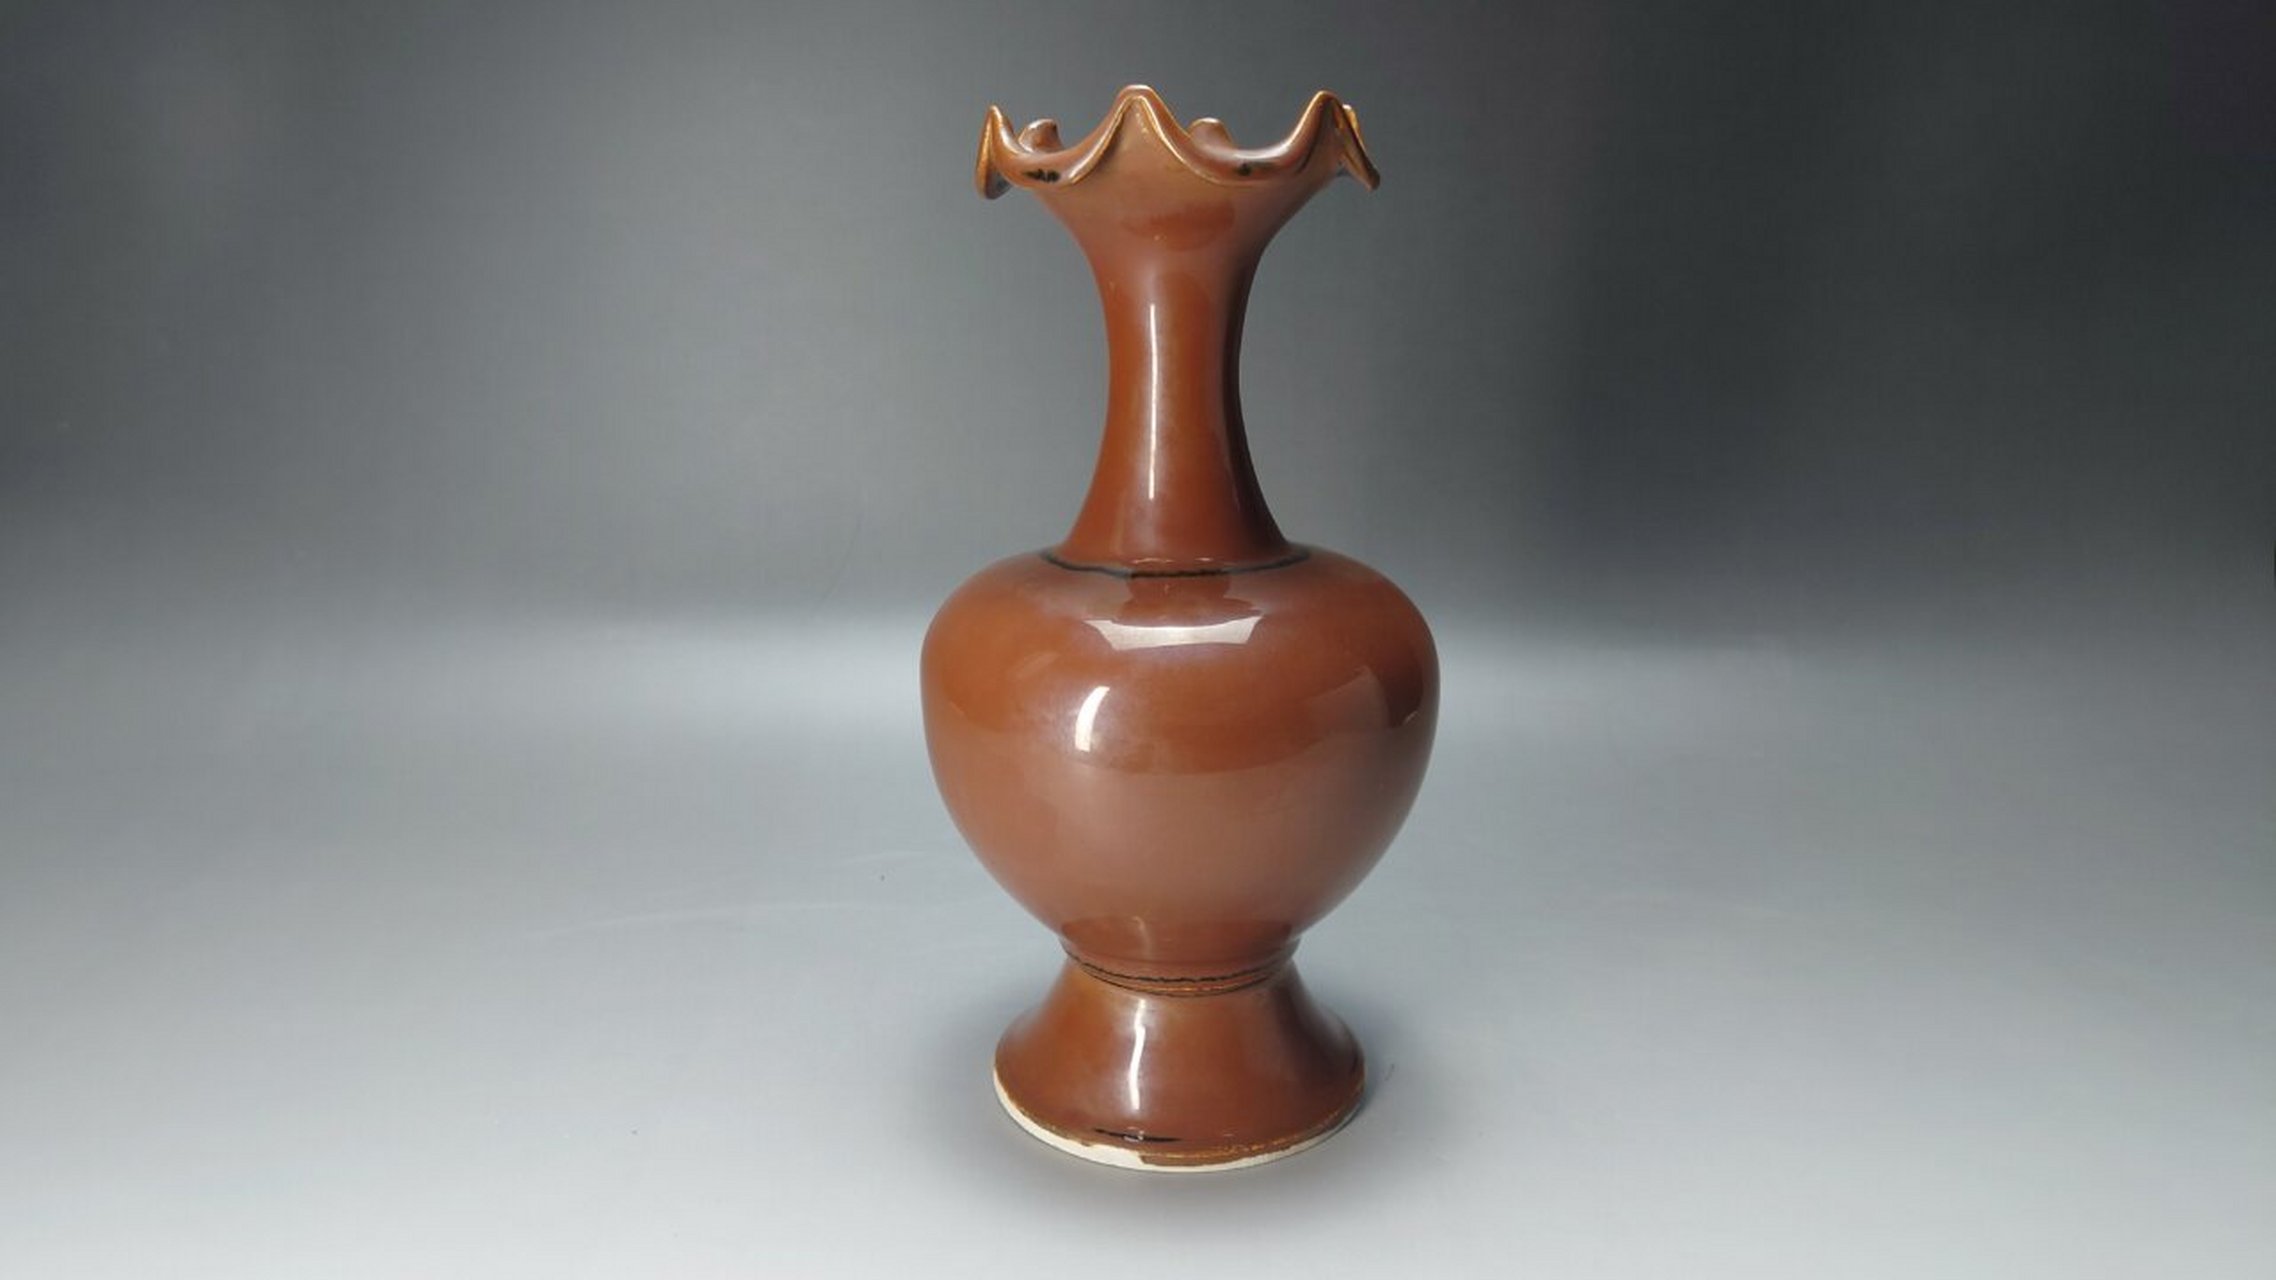 探微堂藏瓷:北宋定窑酱釉花口瓶 在品种繁多,百花争艳的瓷器造型中,花